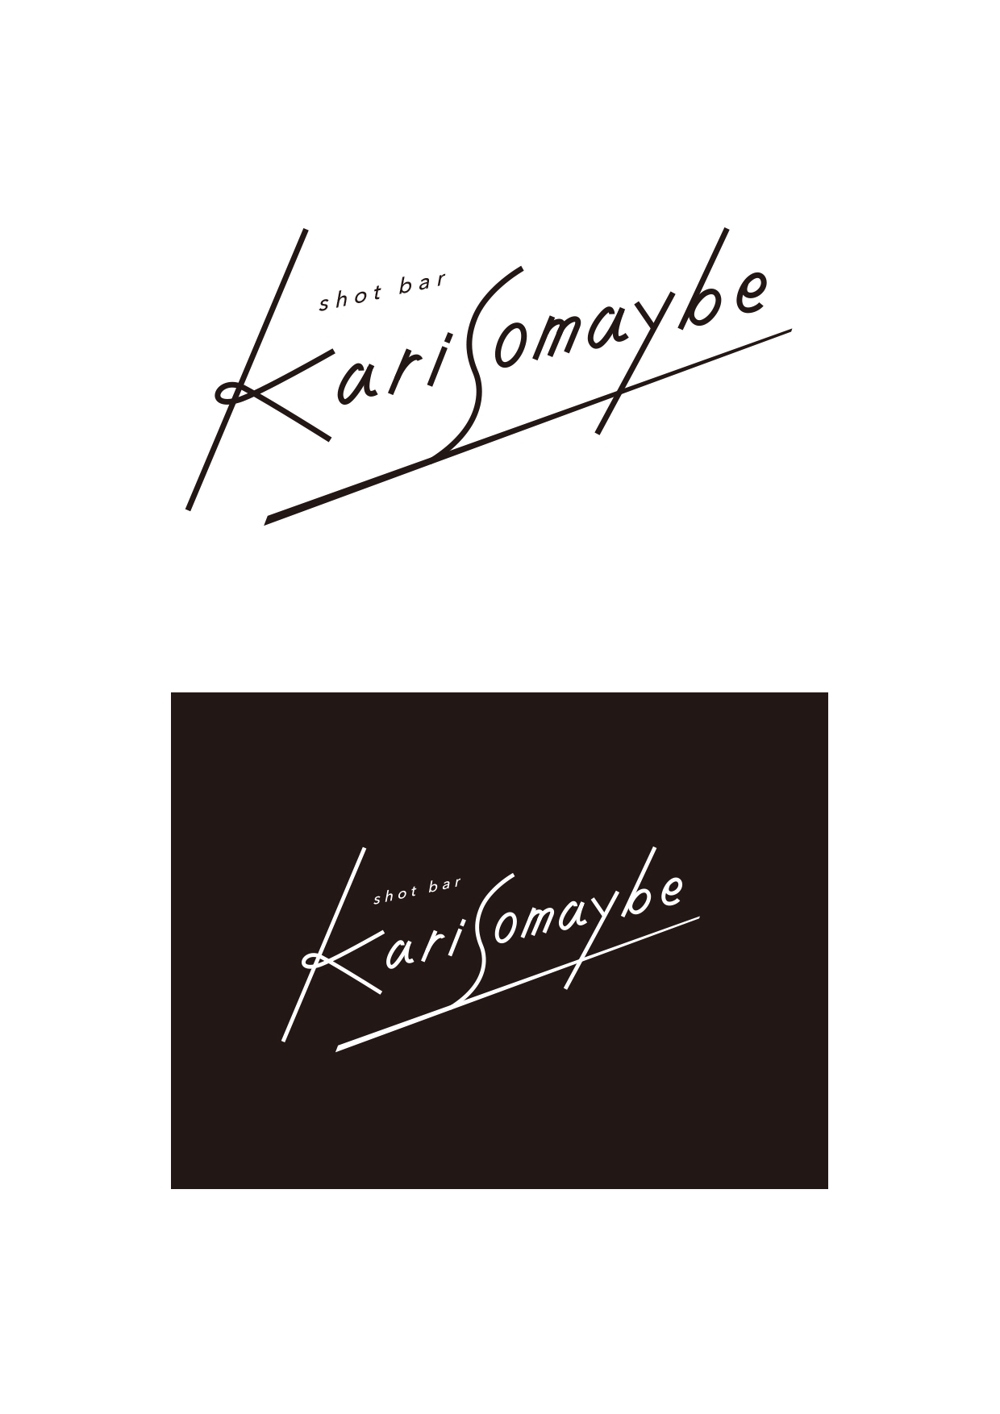 karisomaybe_logo.jpg